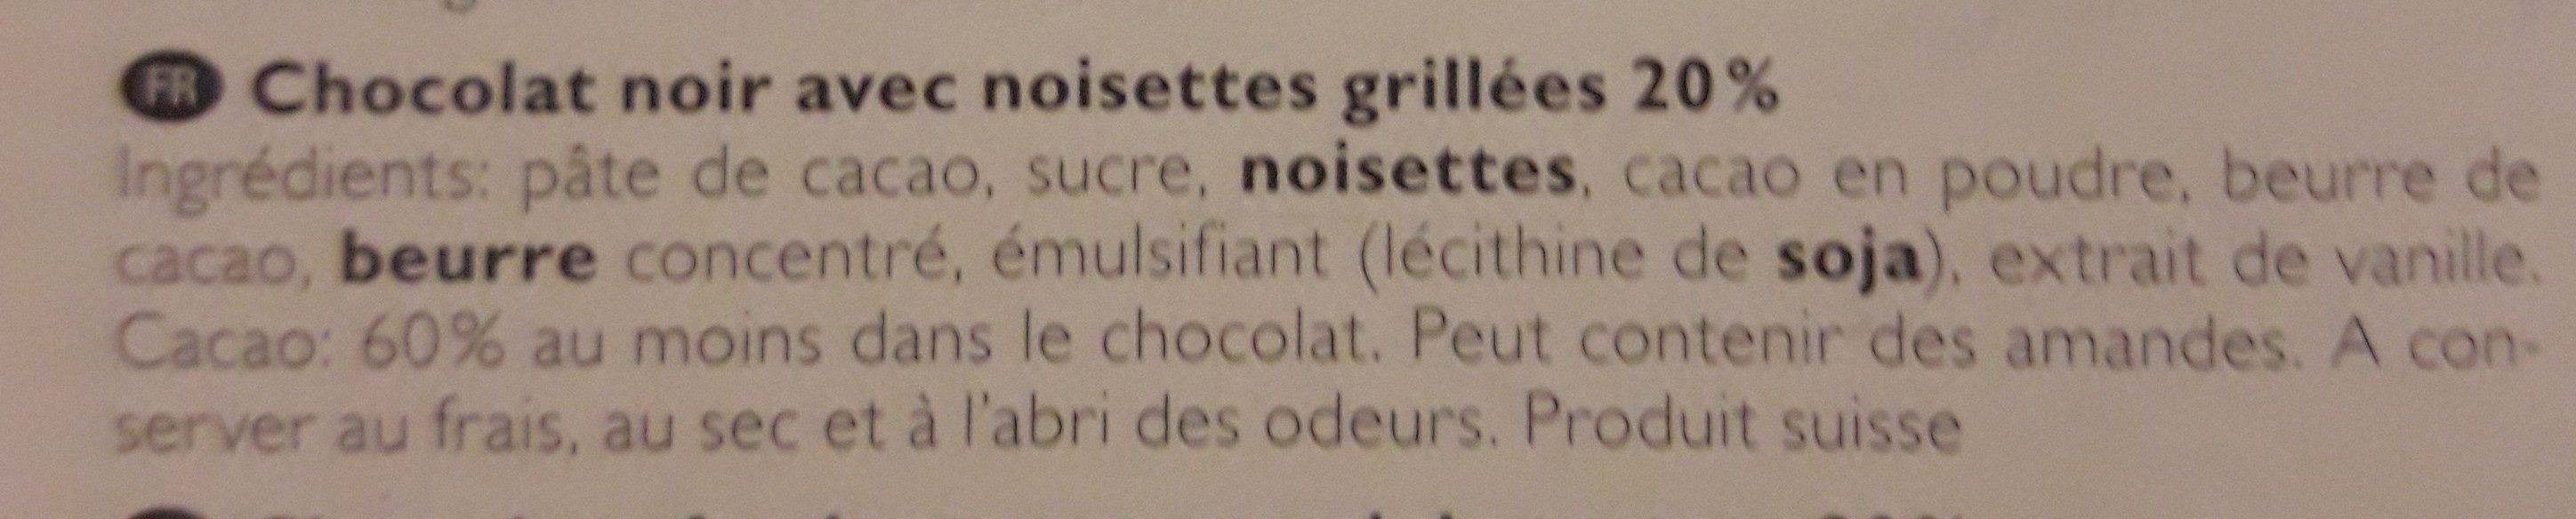 Chocolat noir avec noisette grillées 20% - Ingredients - fr